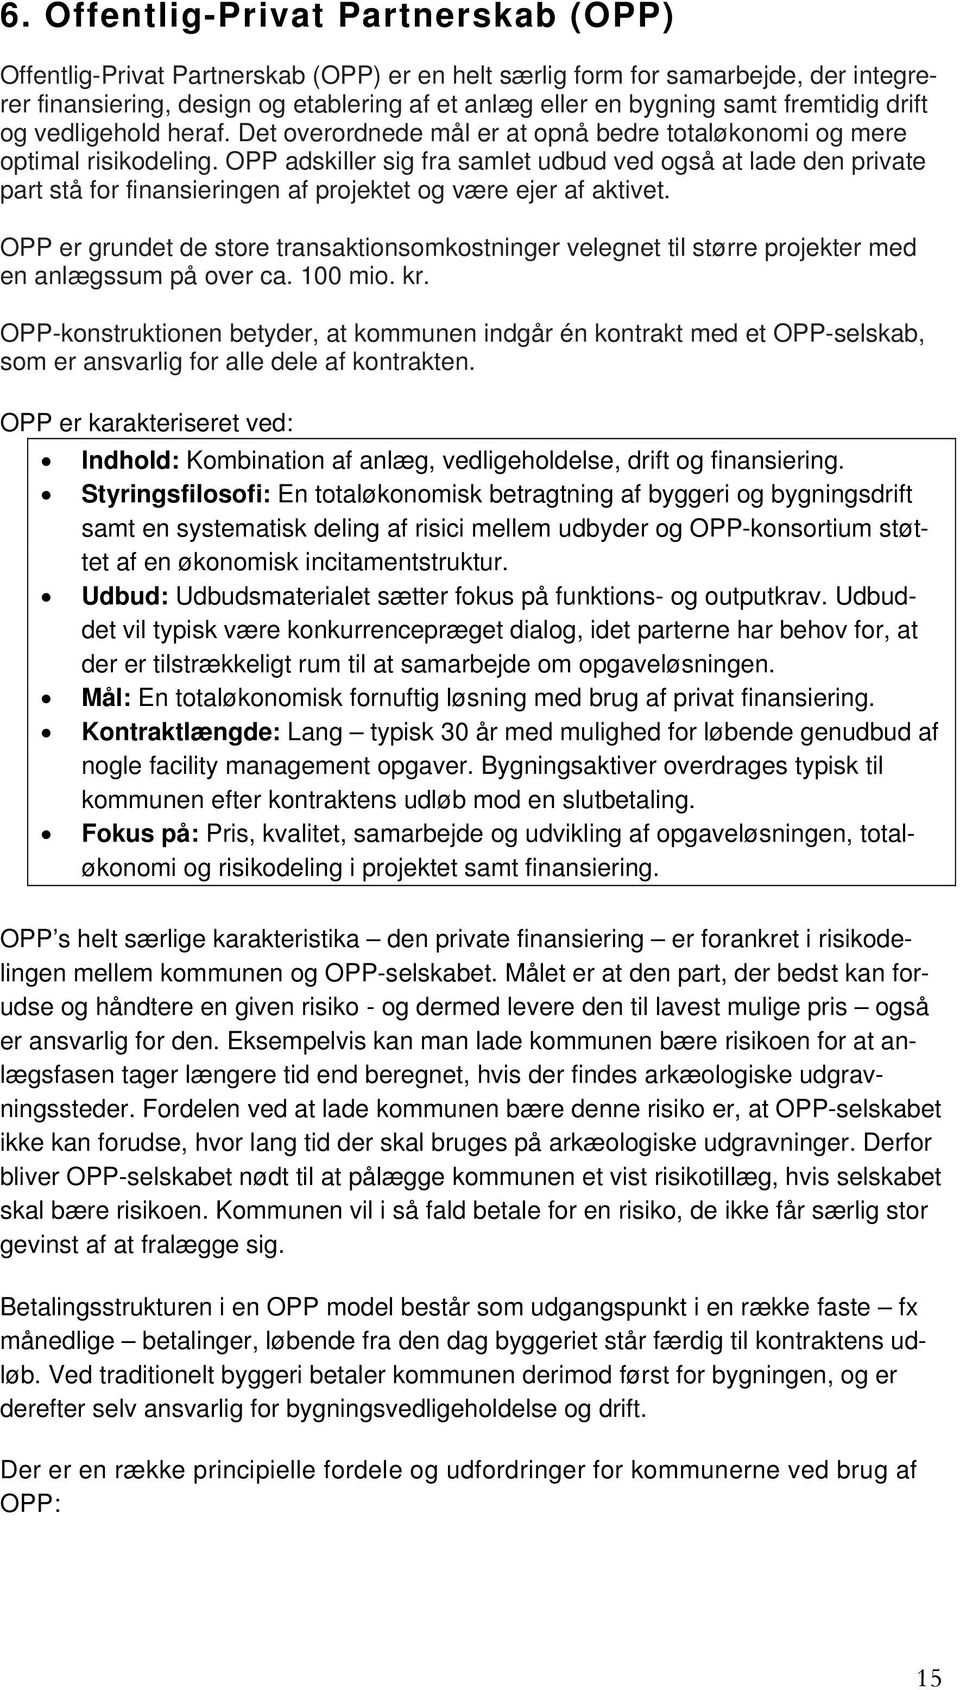 OPP adskiller sig fra samlet udbud ved også at lade den private part stå for finansieringen af projektet og være ejer af aktivet.